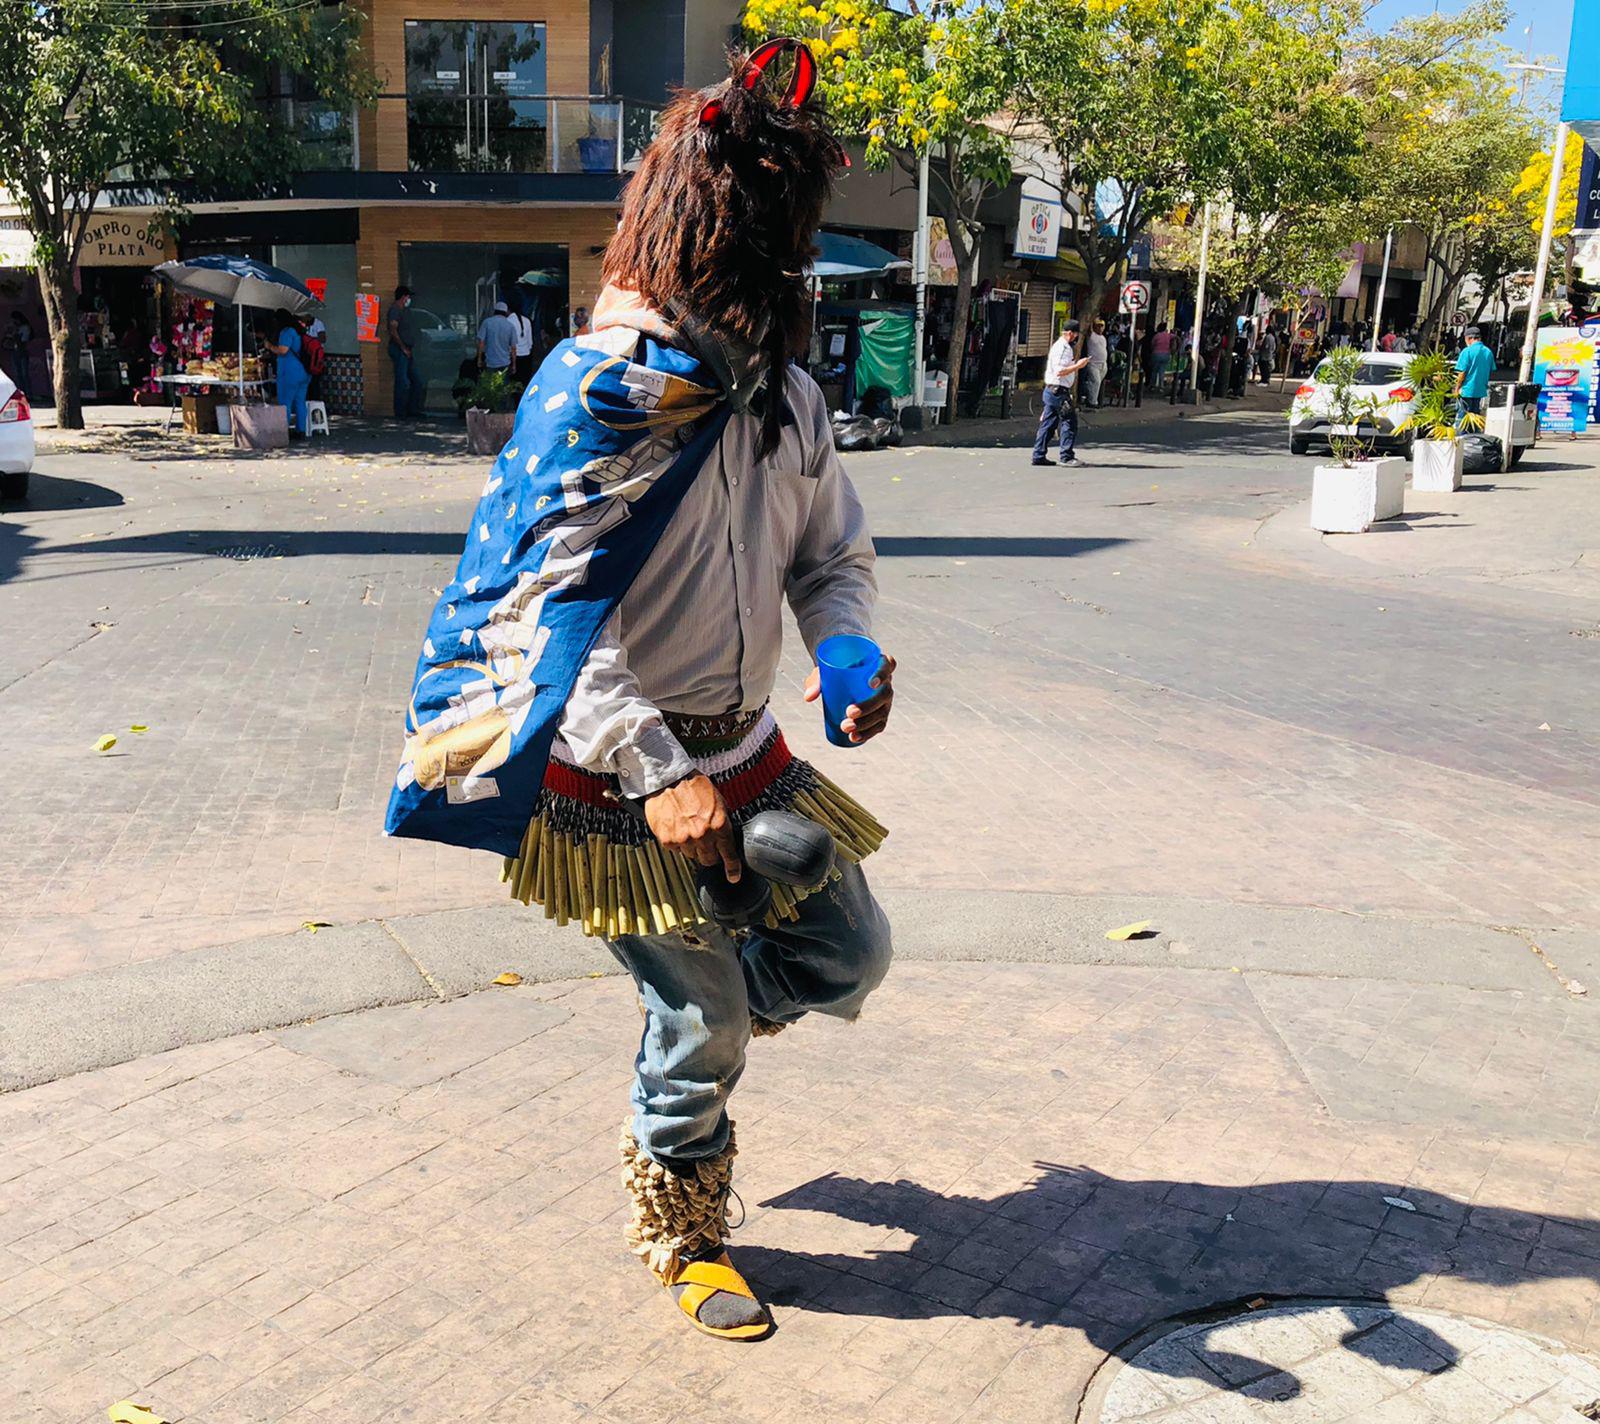 $!Los ‘matachines’ son danza, cultura y tradición en Sinaloa